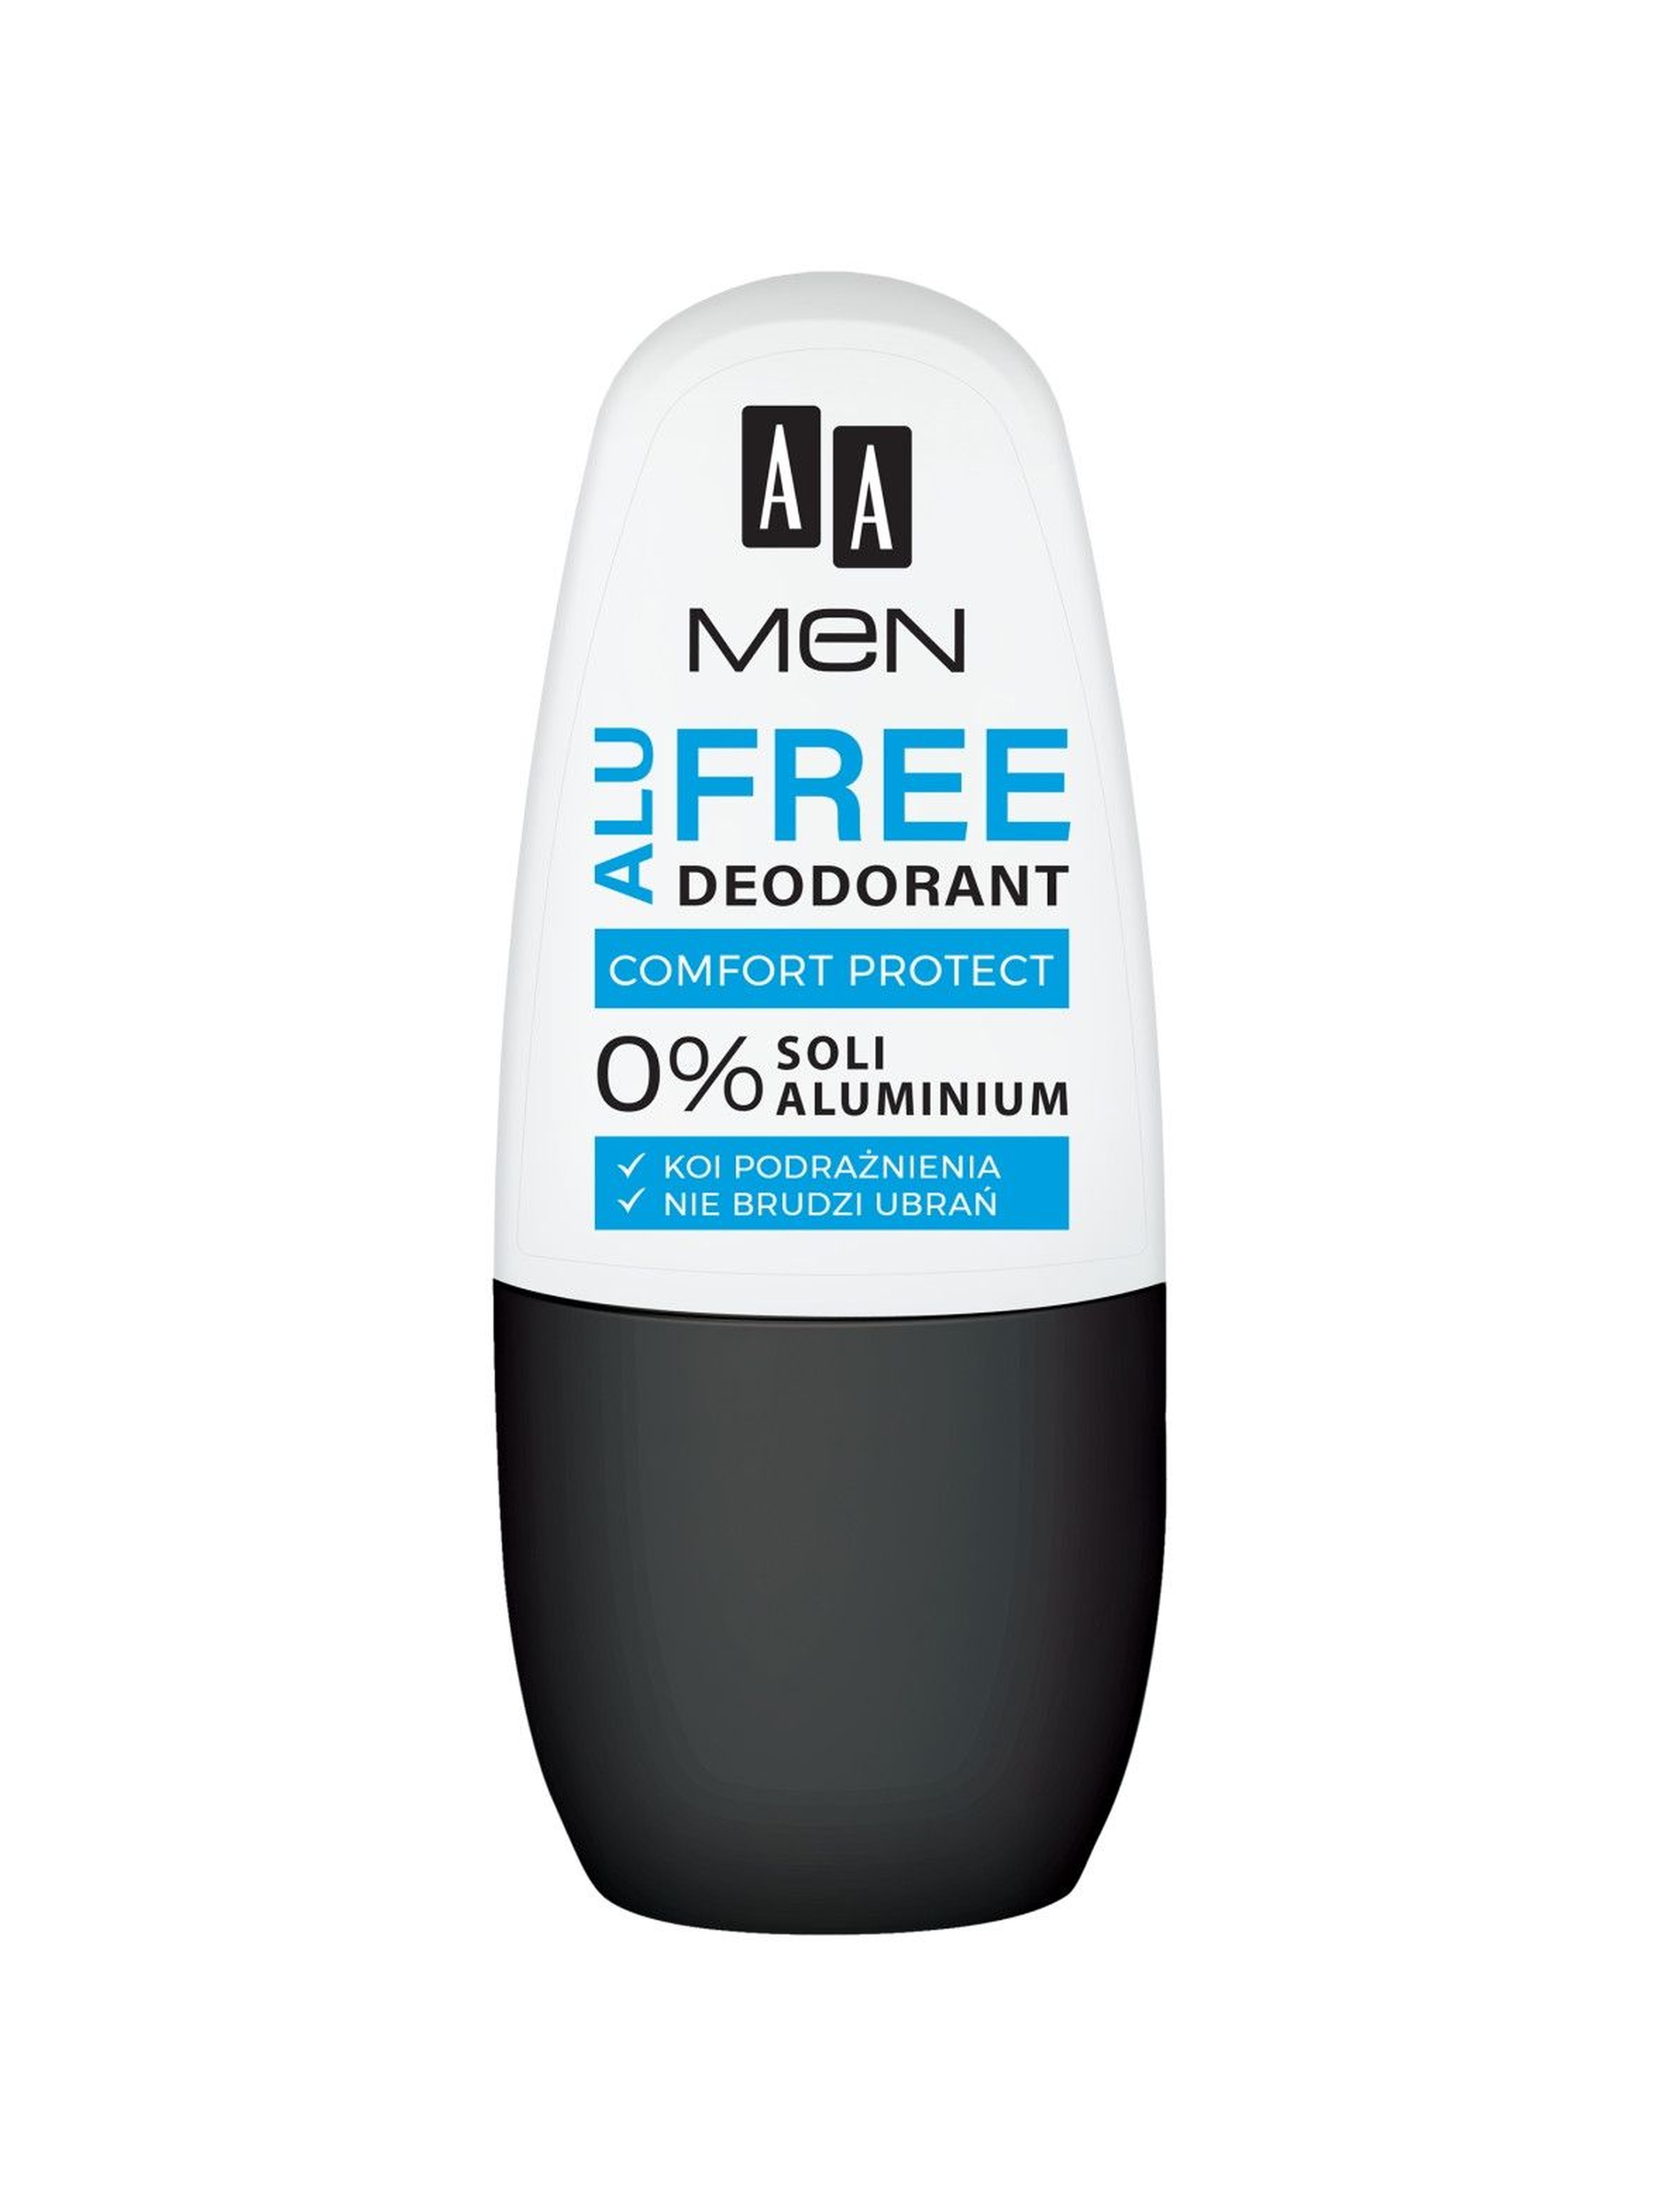 AA Men Alu Free deodorant comfort protect 50 ml